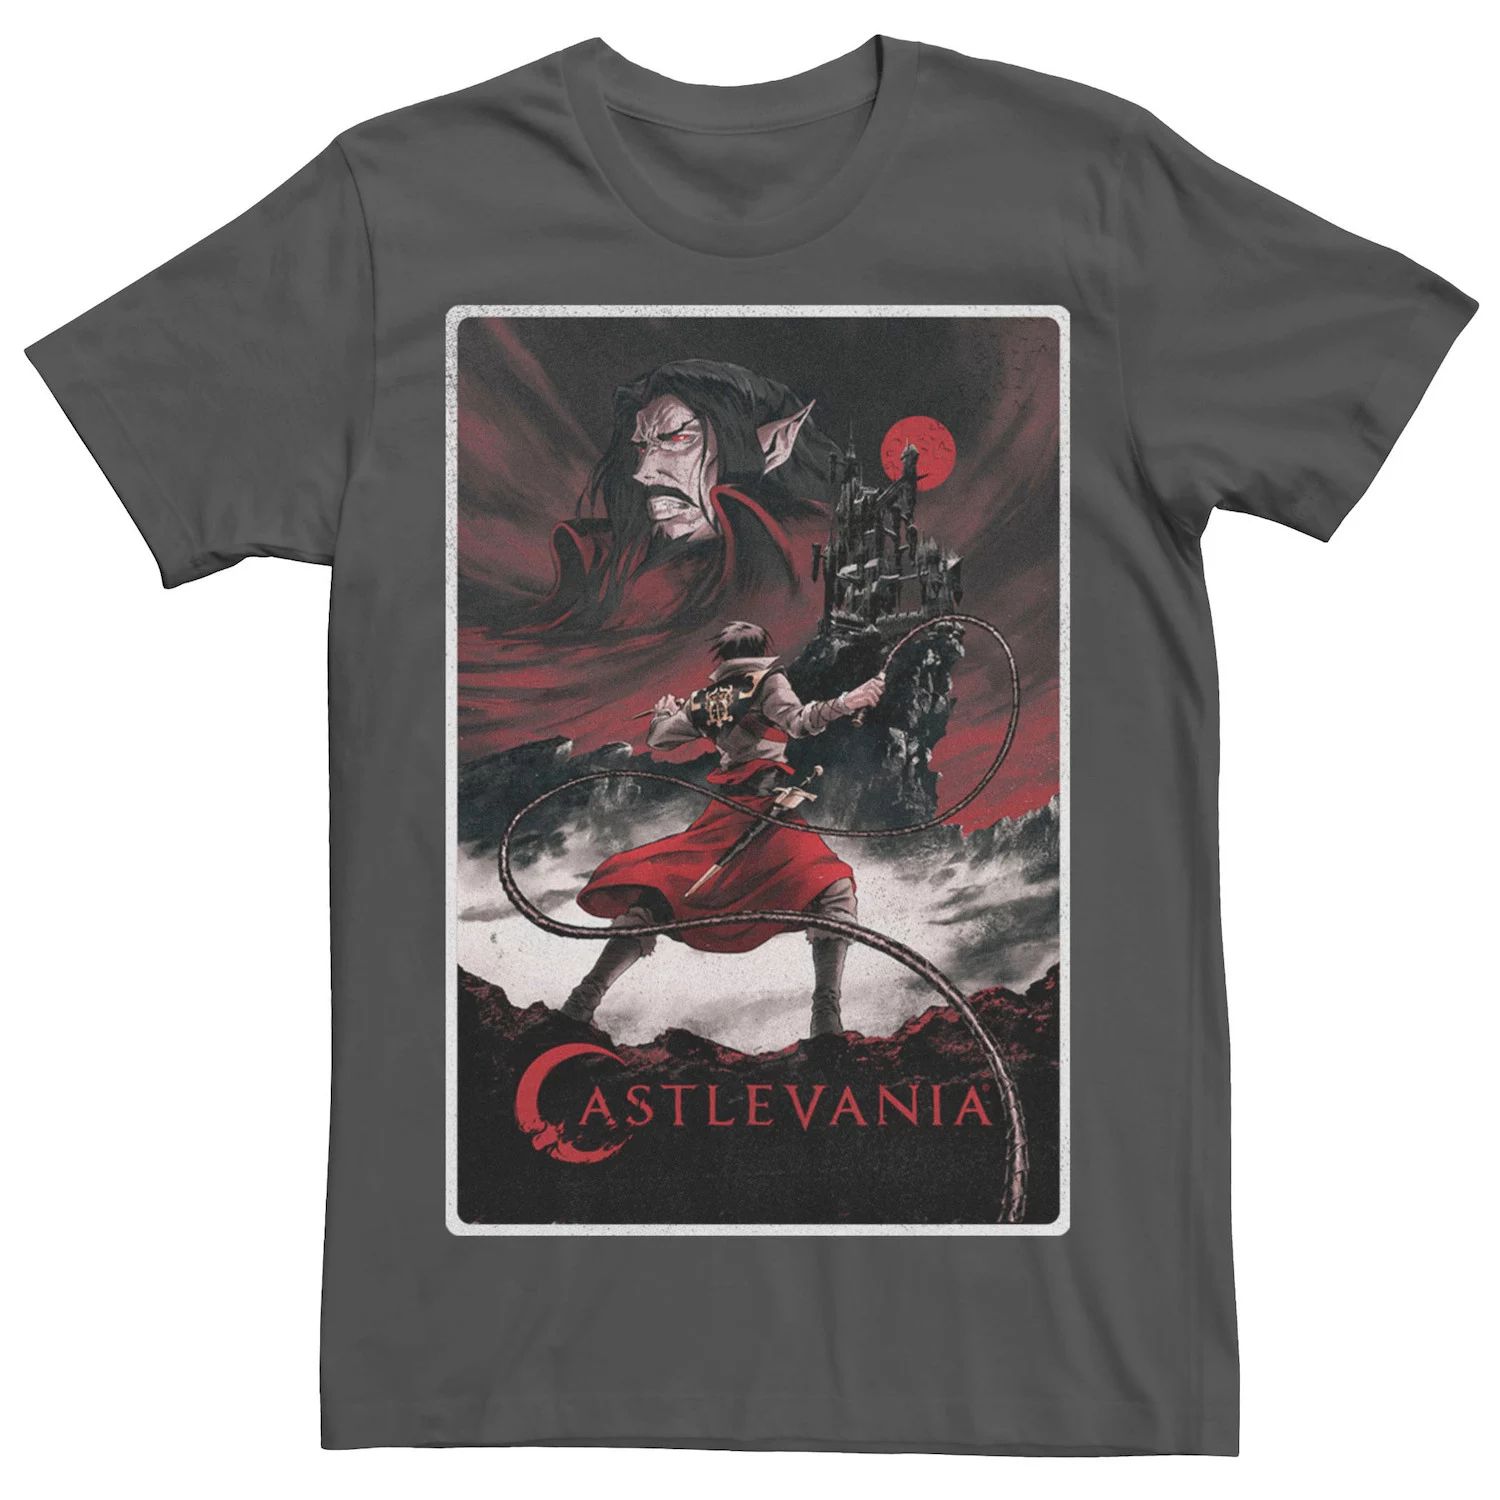 Мужская футболка с плакатом Netflix Castlevania Licensed Character цена и фото